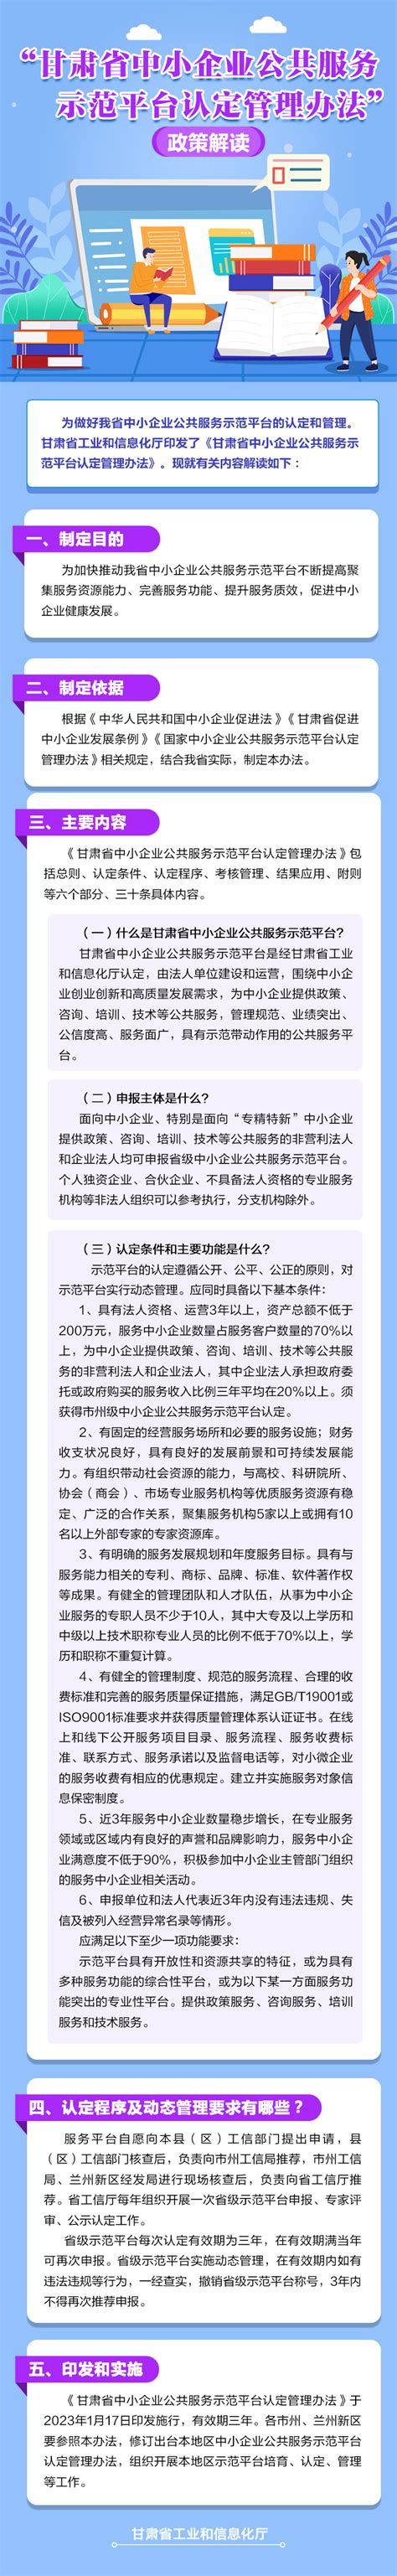 图解|甘肃省中小企业公共服务示范平台认定管理办法-甘南藏族自治州工业和信息化局